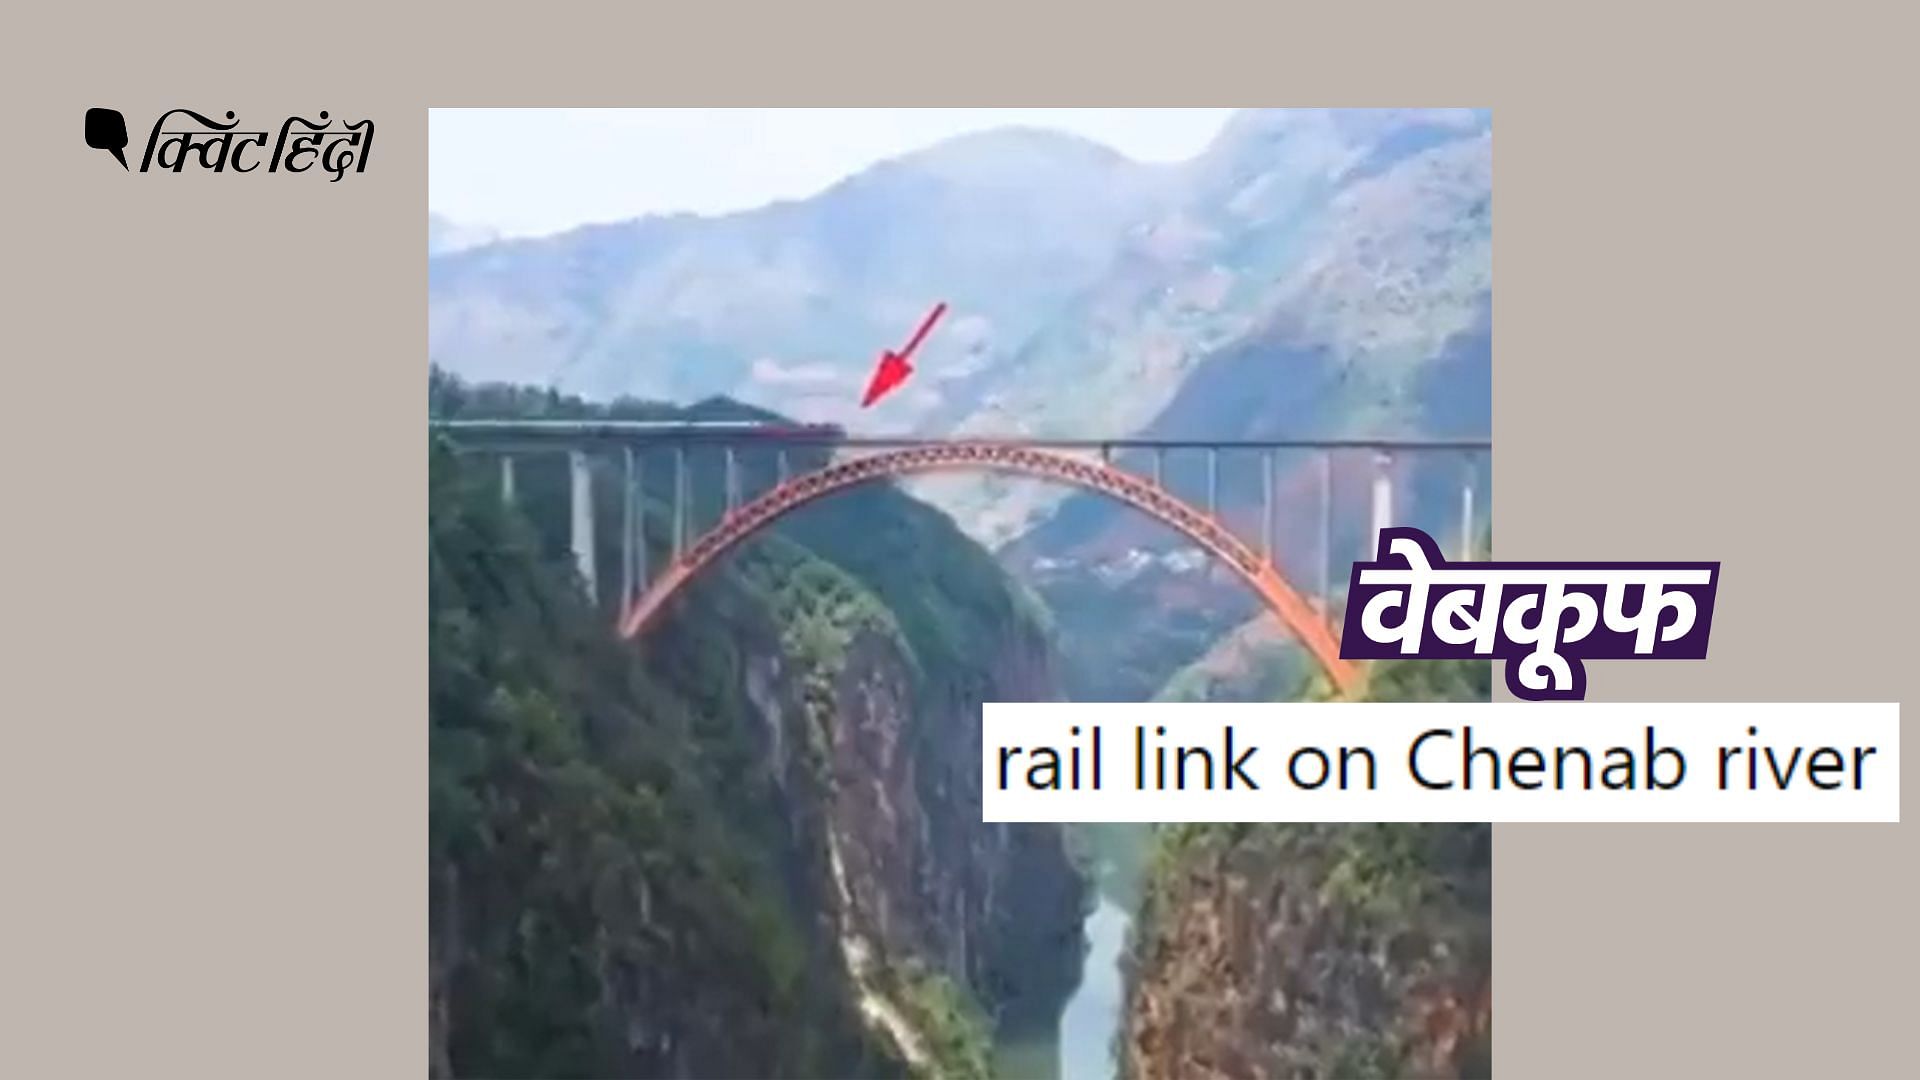 <div class="paragraphs"><p>वायरल वीडियो में चीन के गुइझोउ प्रांत में बने बीपनजियांग रेलवे ब्रिज को देखा जा सकता है.</p></div>